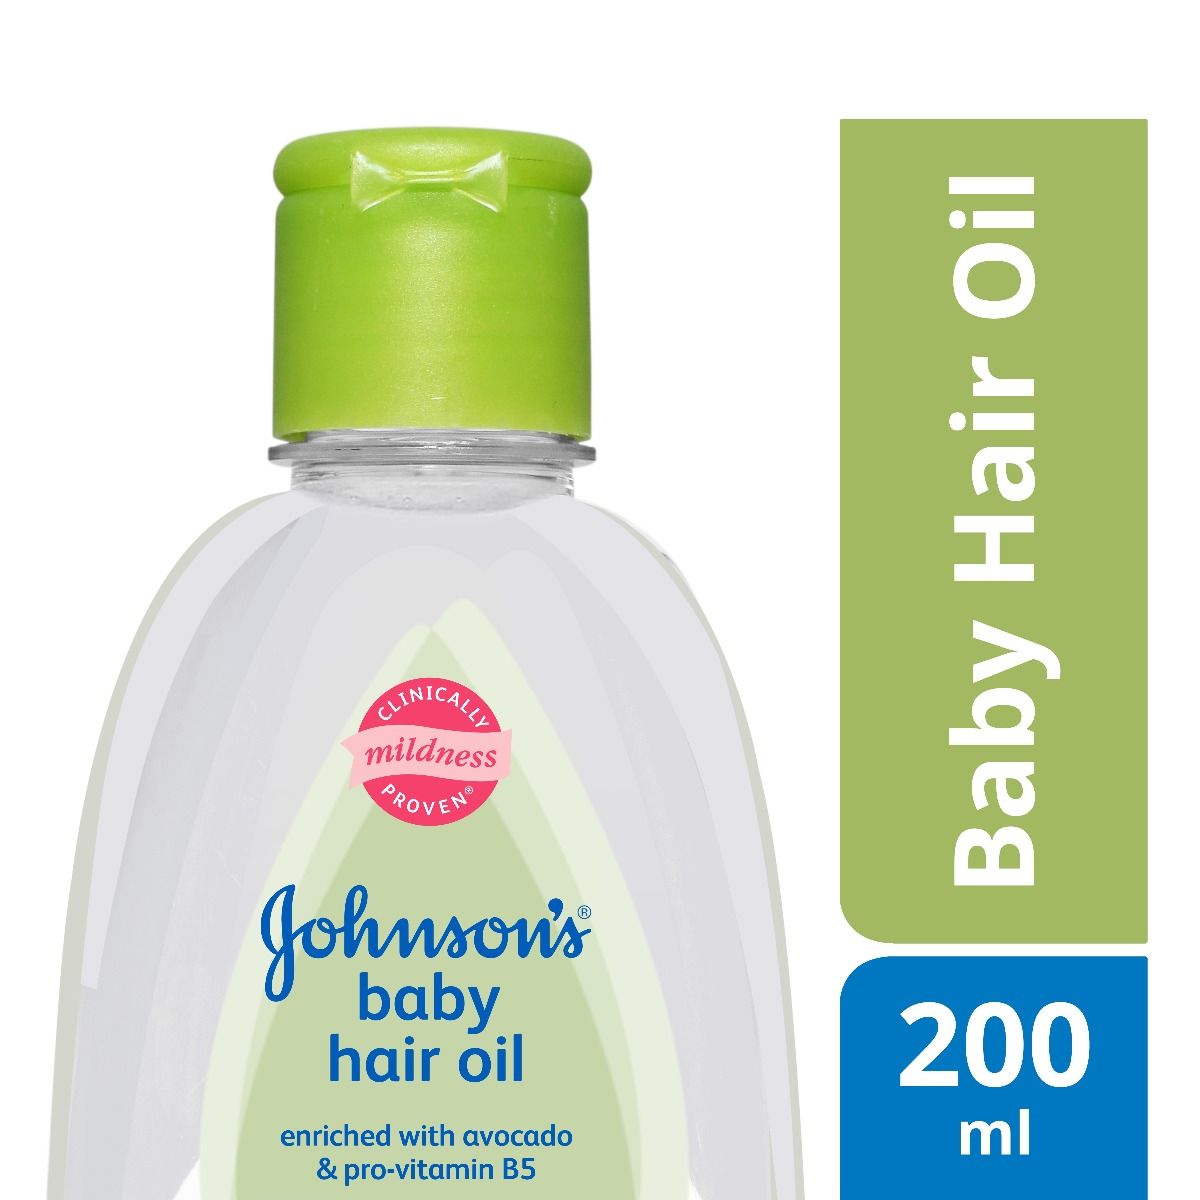 Johnson's Baby Hair Oil, 200 ml, Pack of 1 